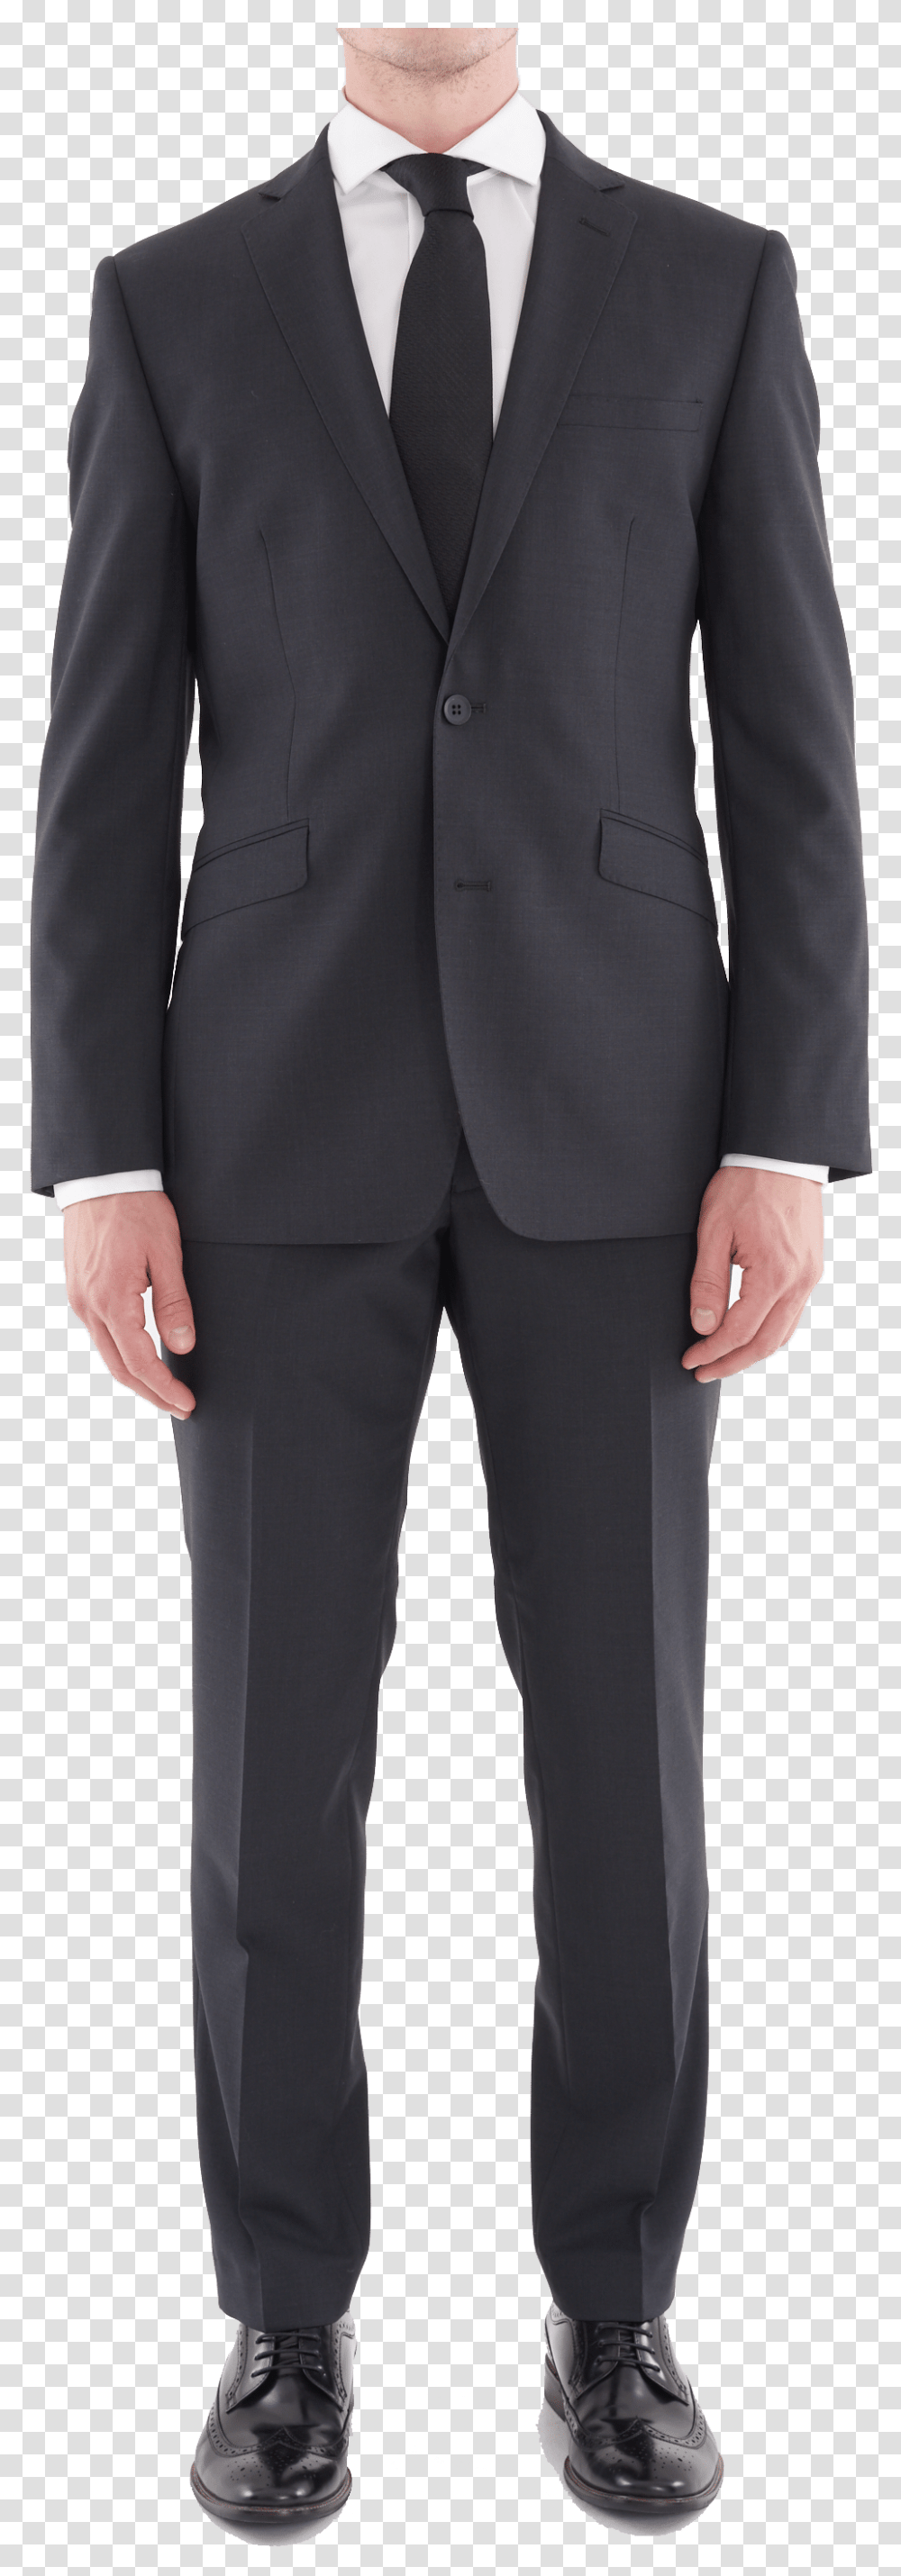 The Droper Bomb Suits Tuxedo, Overcoat, Apparel, Person Transparent Png